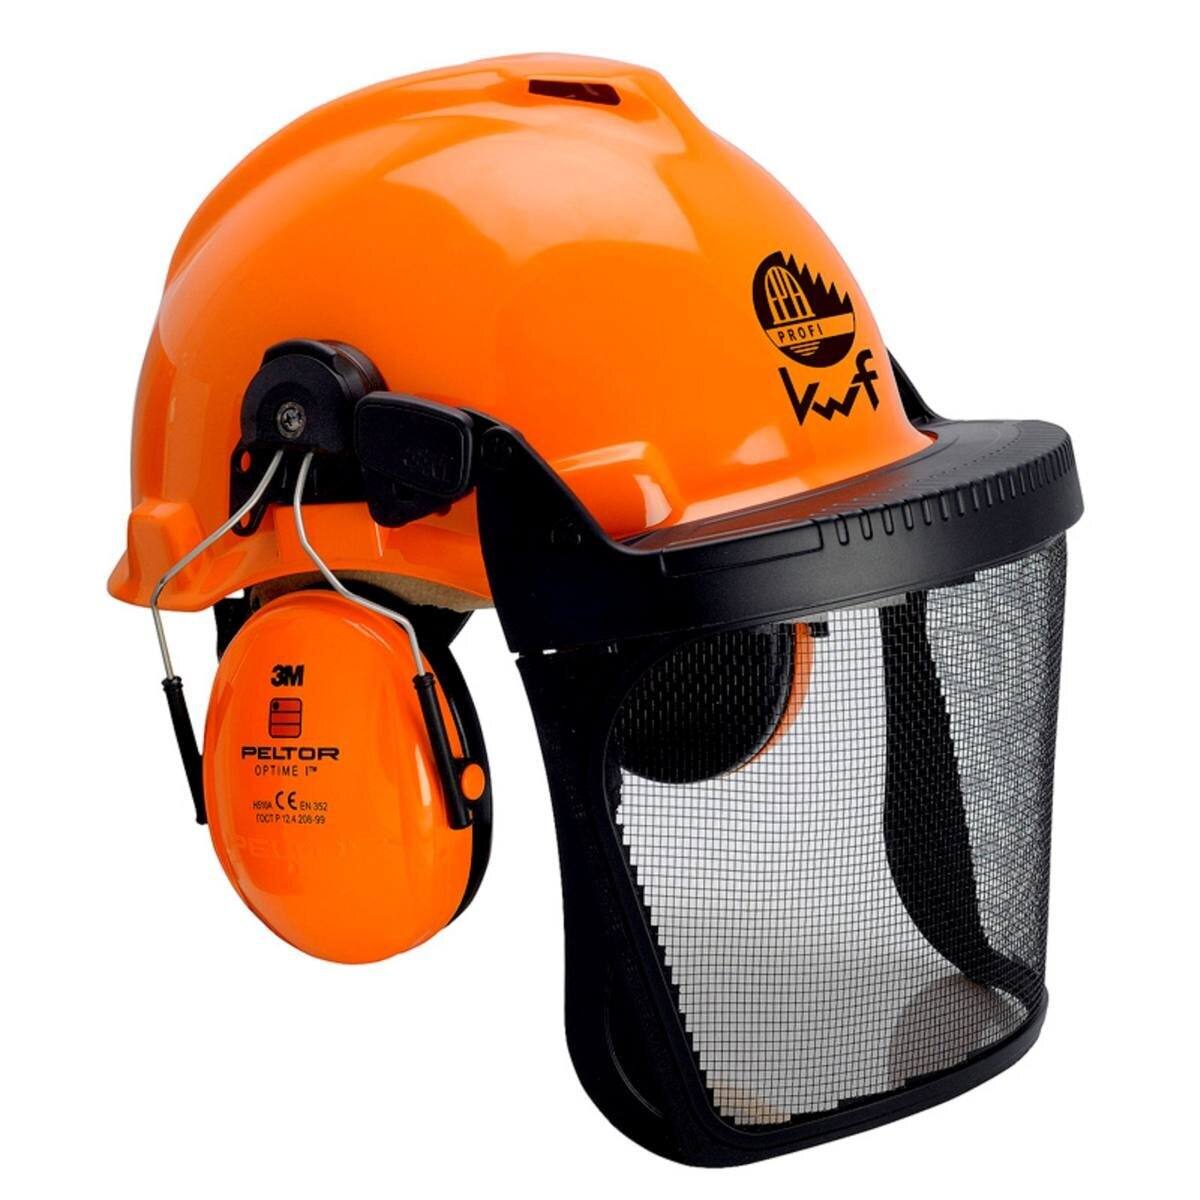 3M G22D Kopfschutz-Kombination 22DO515C in orange, mit H510P3E Kapseln, Pinlock Verschluß, Visier 5C Edelstahl, Lederschweißband und KWF-Logo